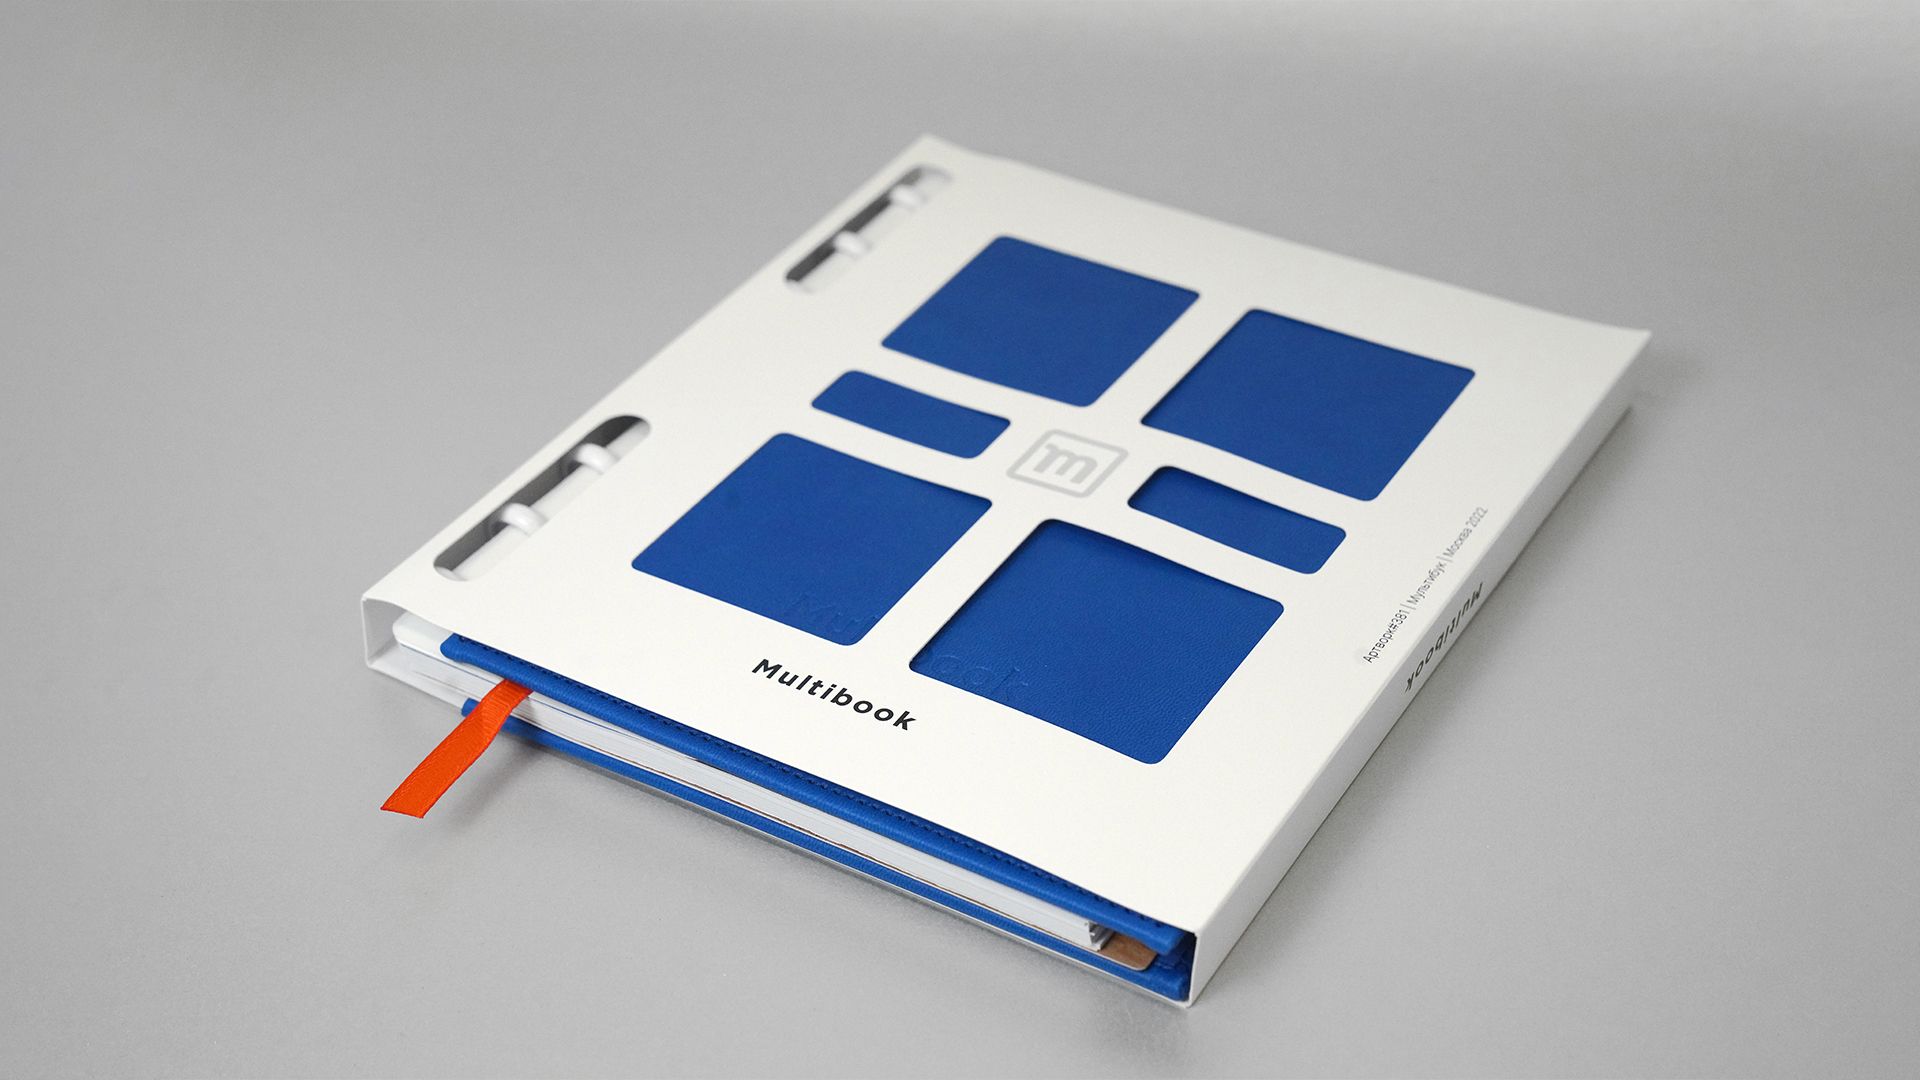 мультибук планер в индивидуальной упаковке